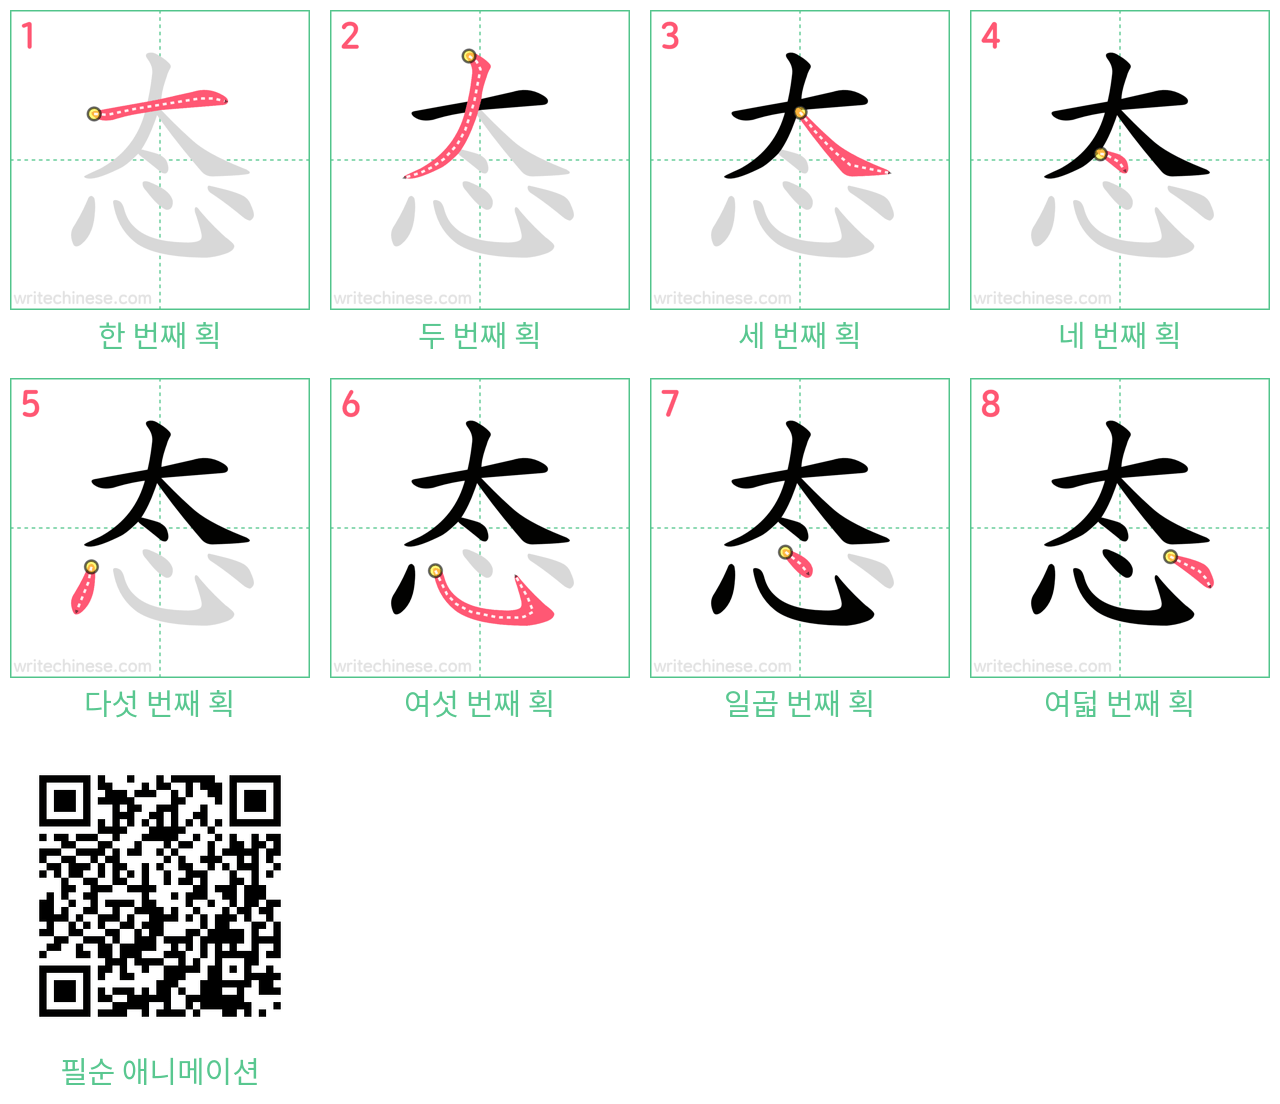 态 step-by-step stroke order diagrams